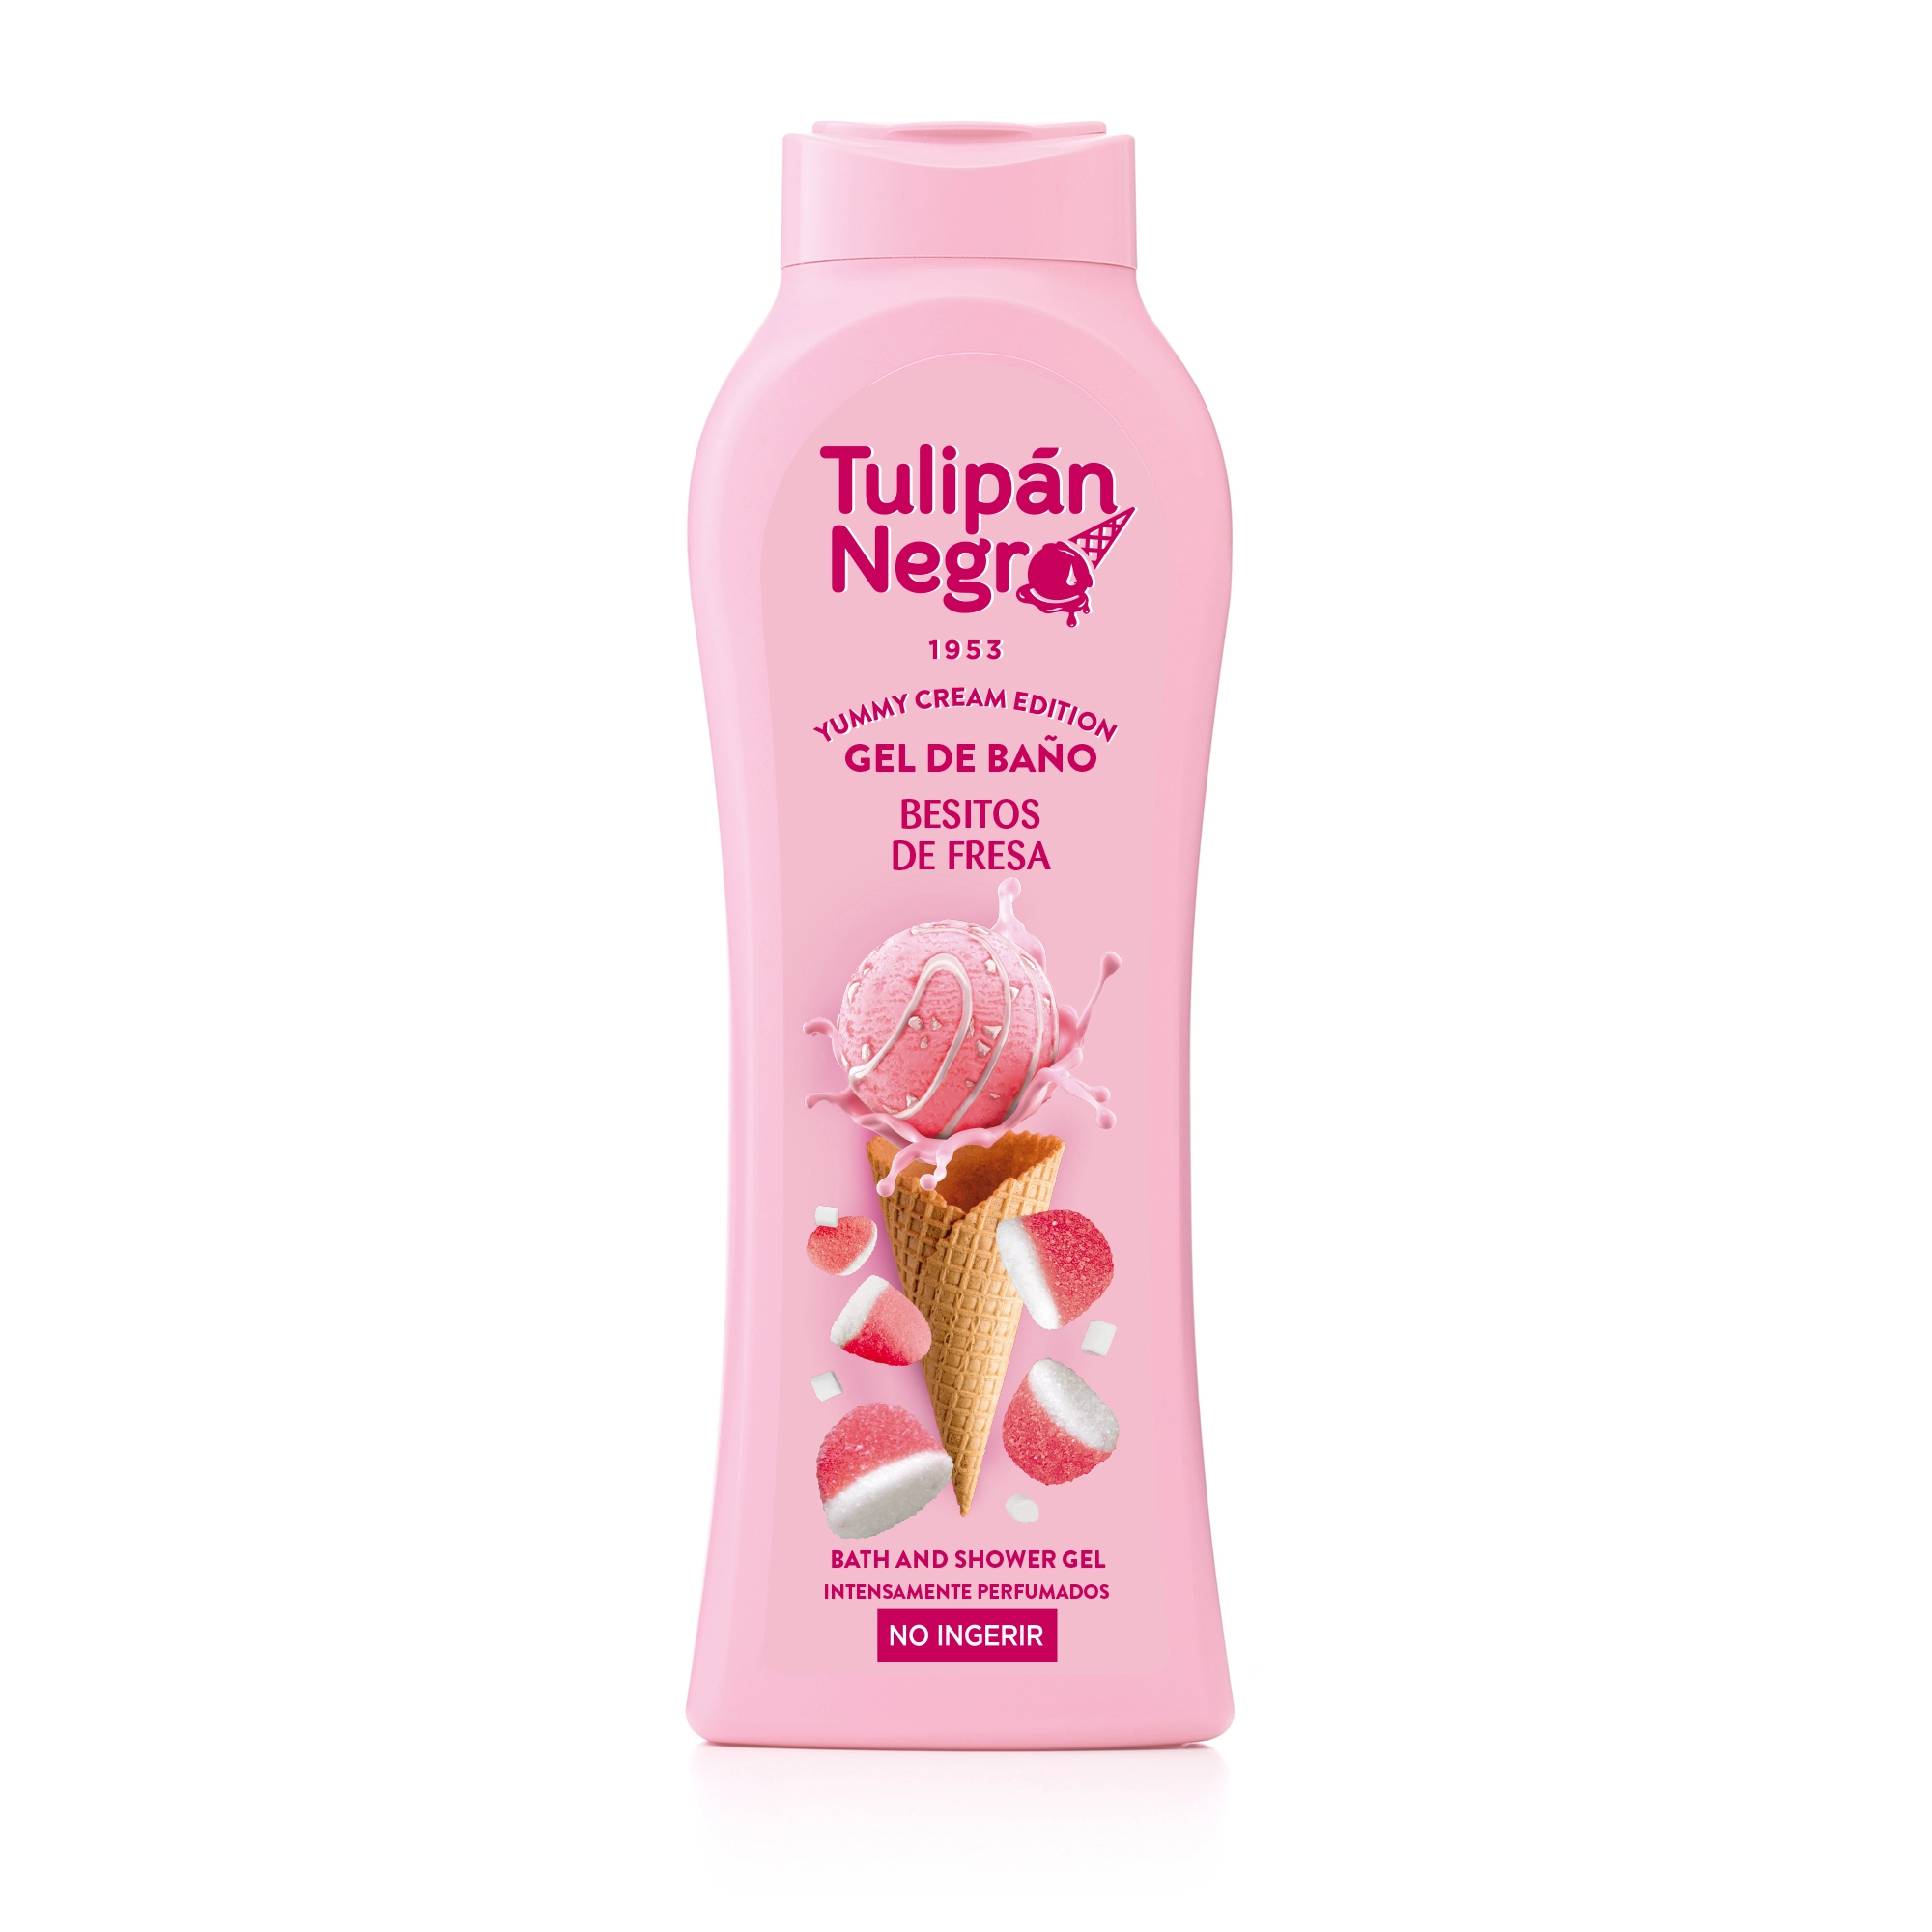 Гель для ванны и душа с ароматом сладкой клубники - Tulipan Negro Yummy Cream Edition Strawberry Kisses Bath And Shower Gel, 650 мл - фото N1